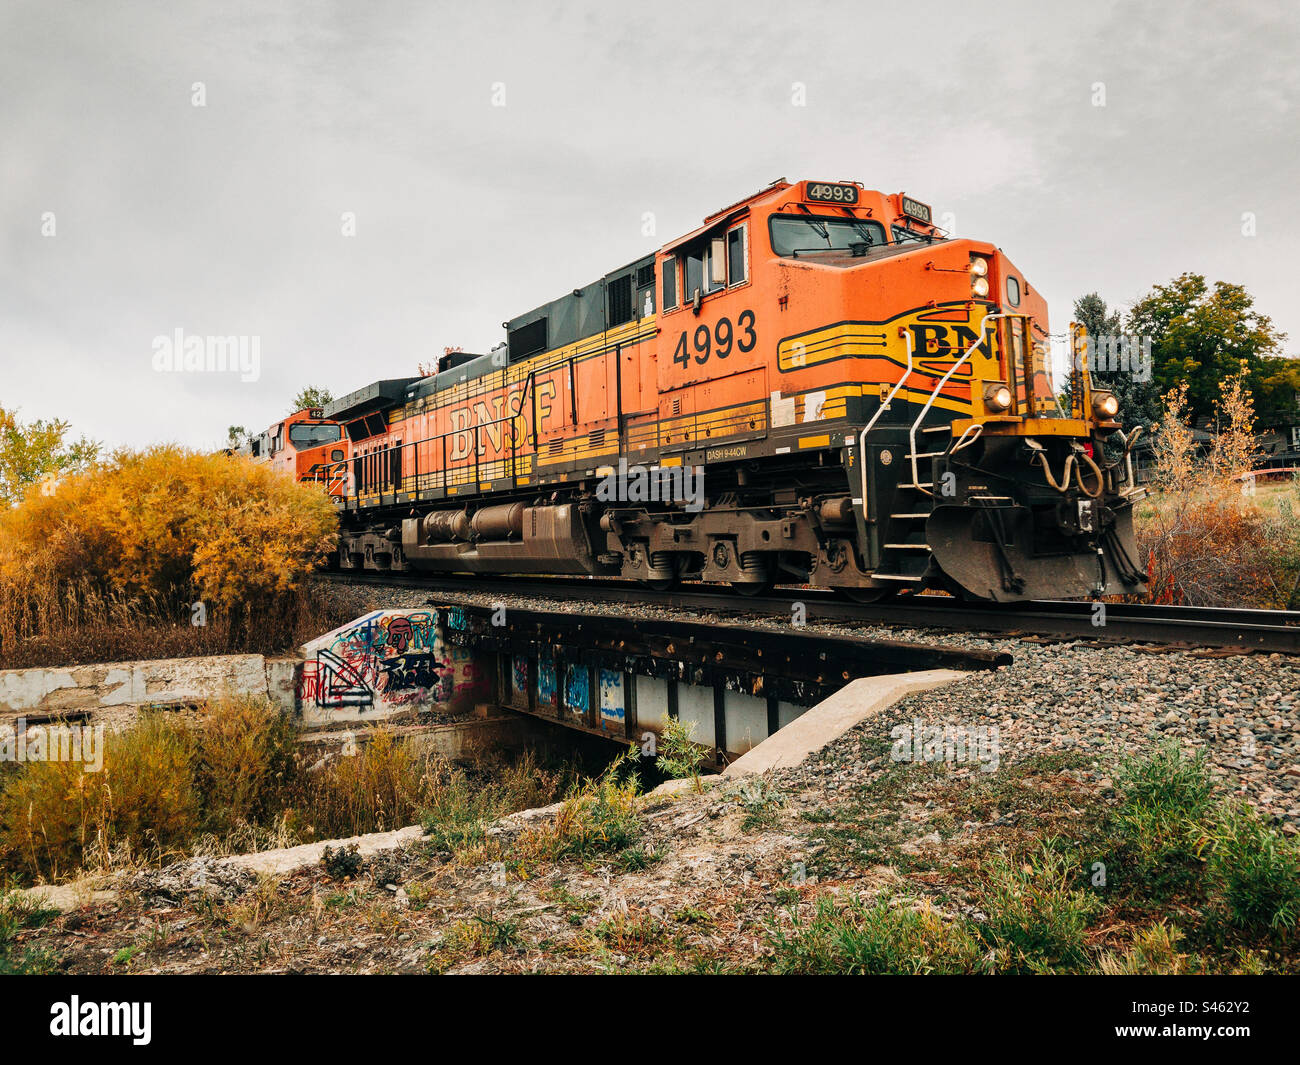 Une locomotive BNSF tire un train de marchandises sur un petit pont dans un paysage automnal. Banque D'Images